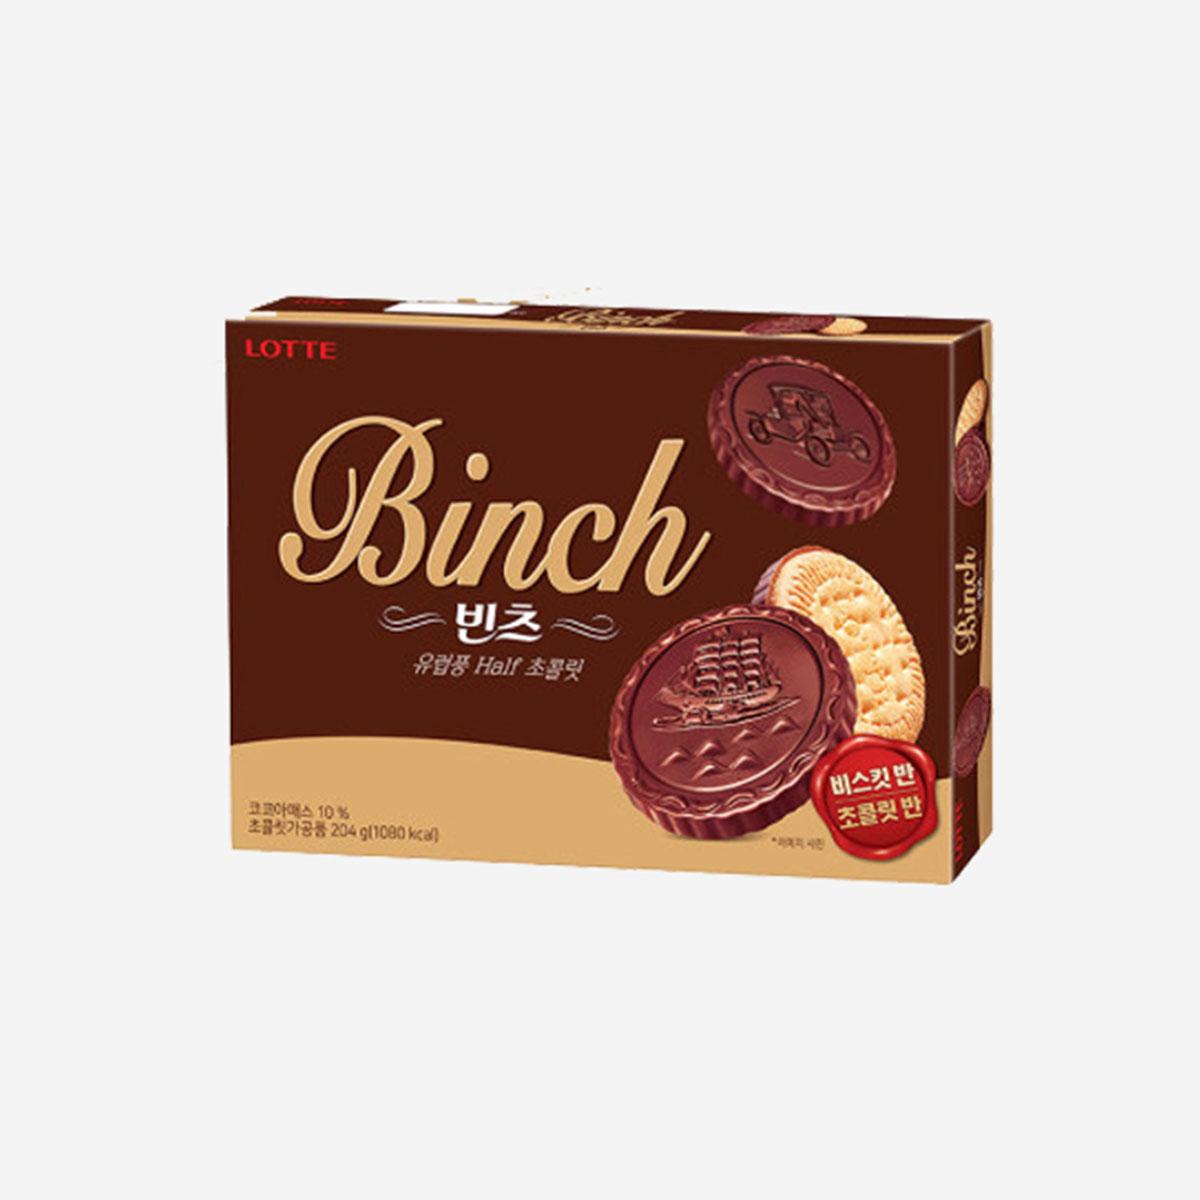 Binch巧克力餅乾 (204g)